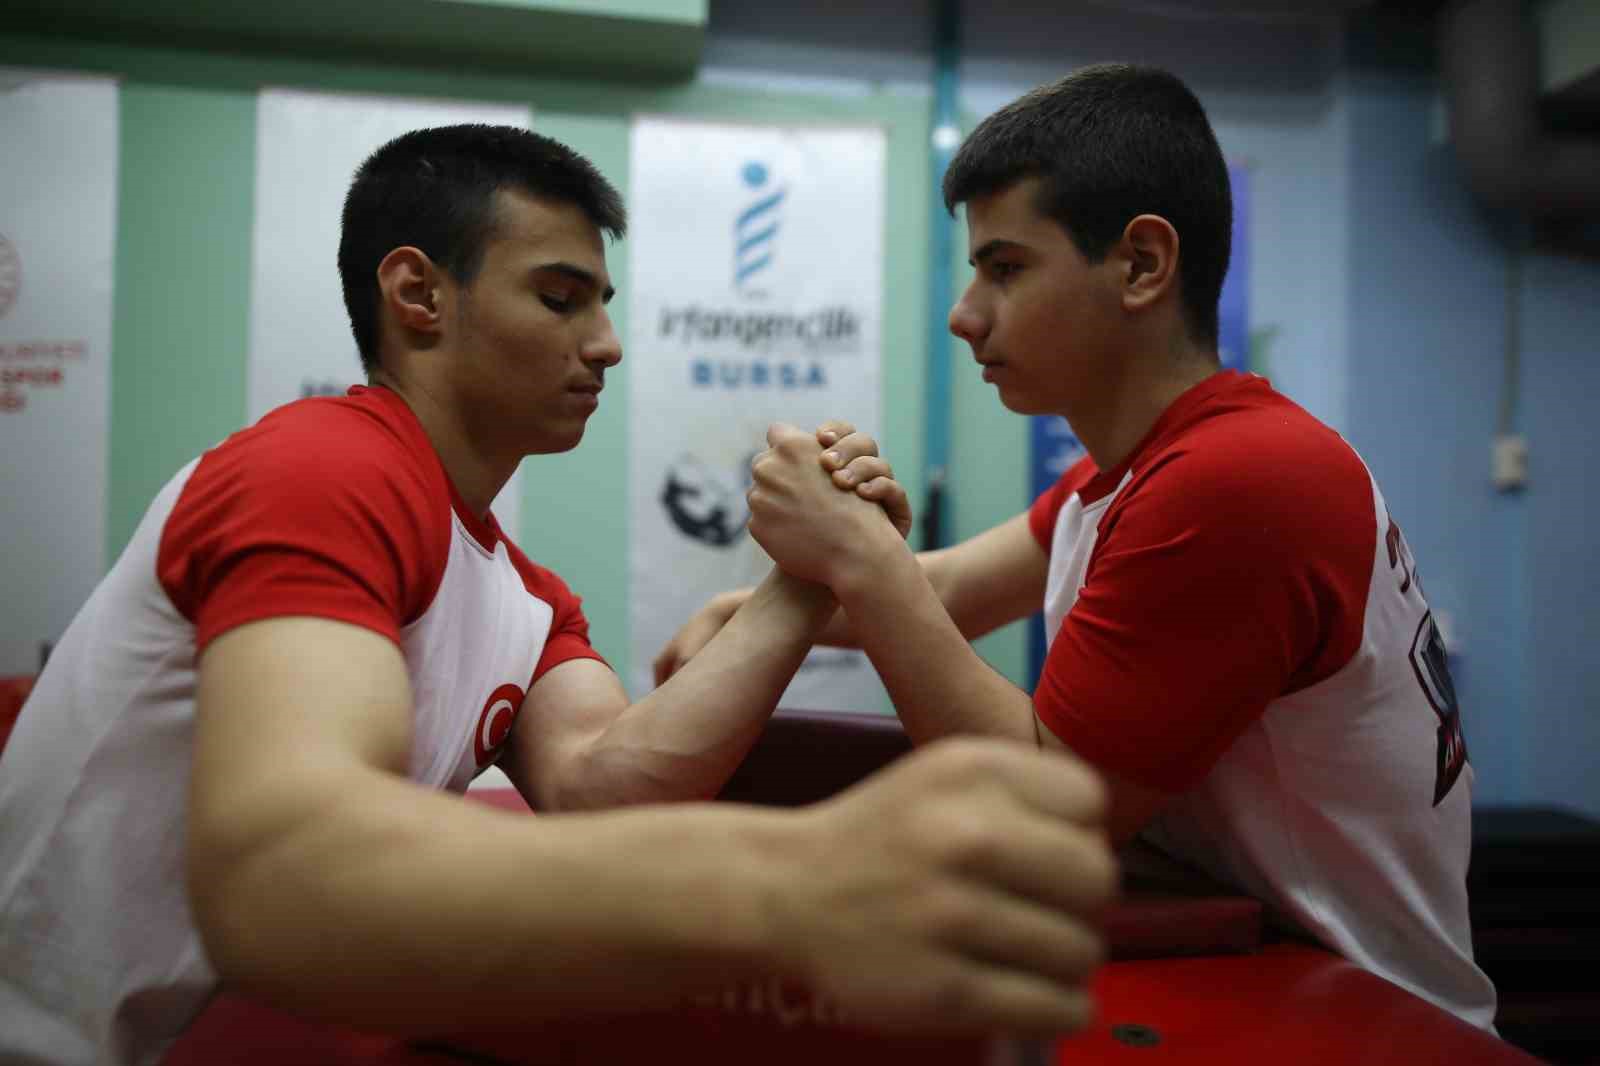 Avrupanın Bileğini Büken İkizler Dünya Şampiyonluğuna Hazırlanıyor